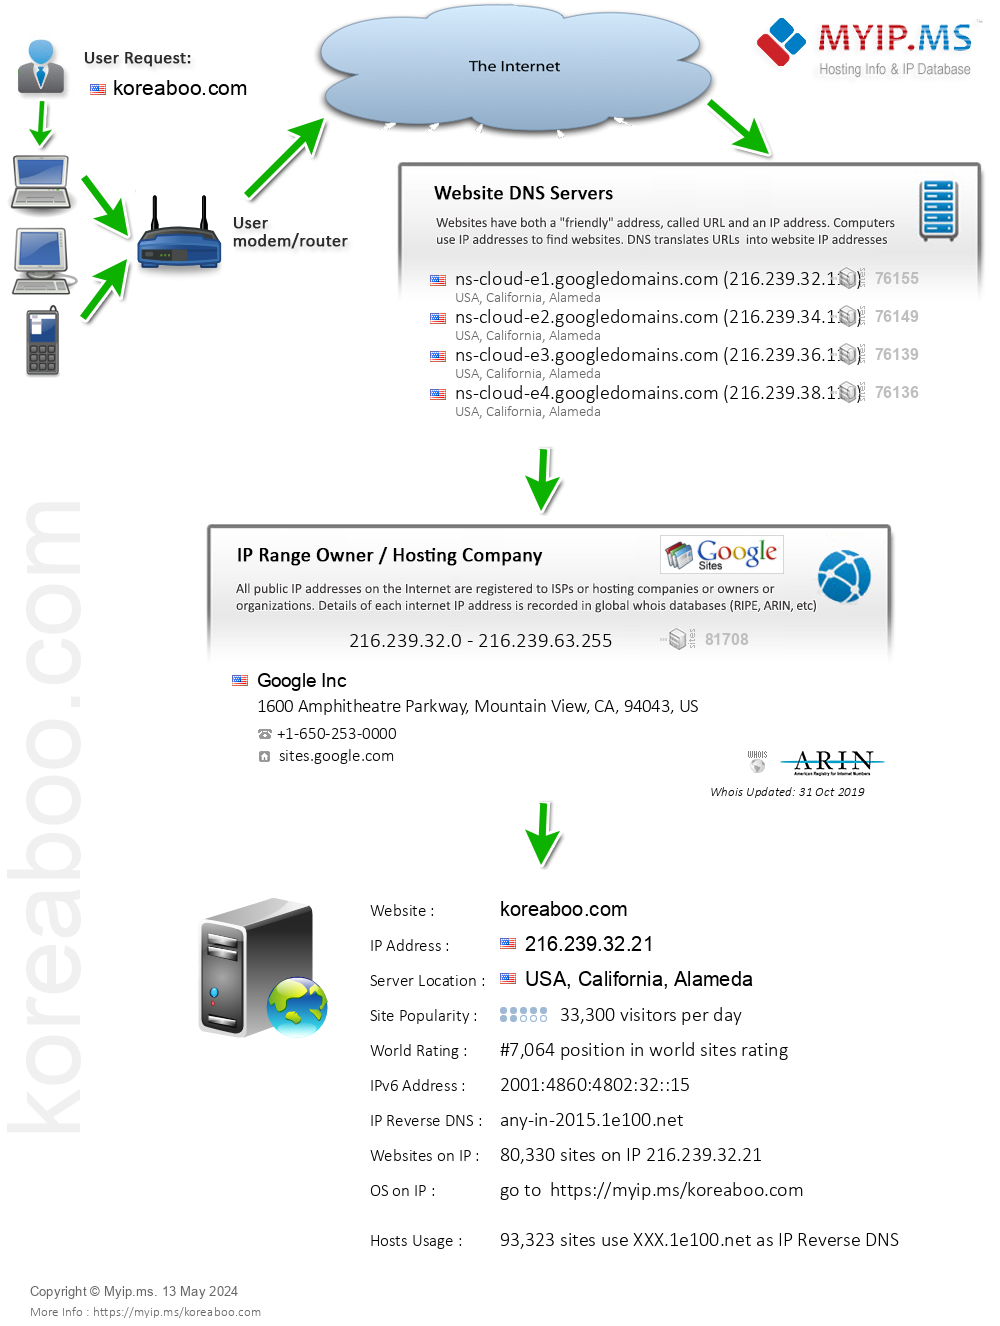 Koreaboo.com - Website Hosting Visual IP Diagram